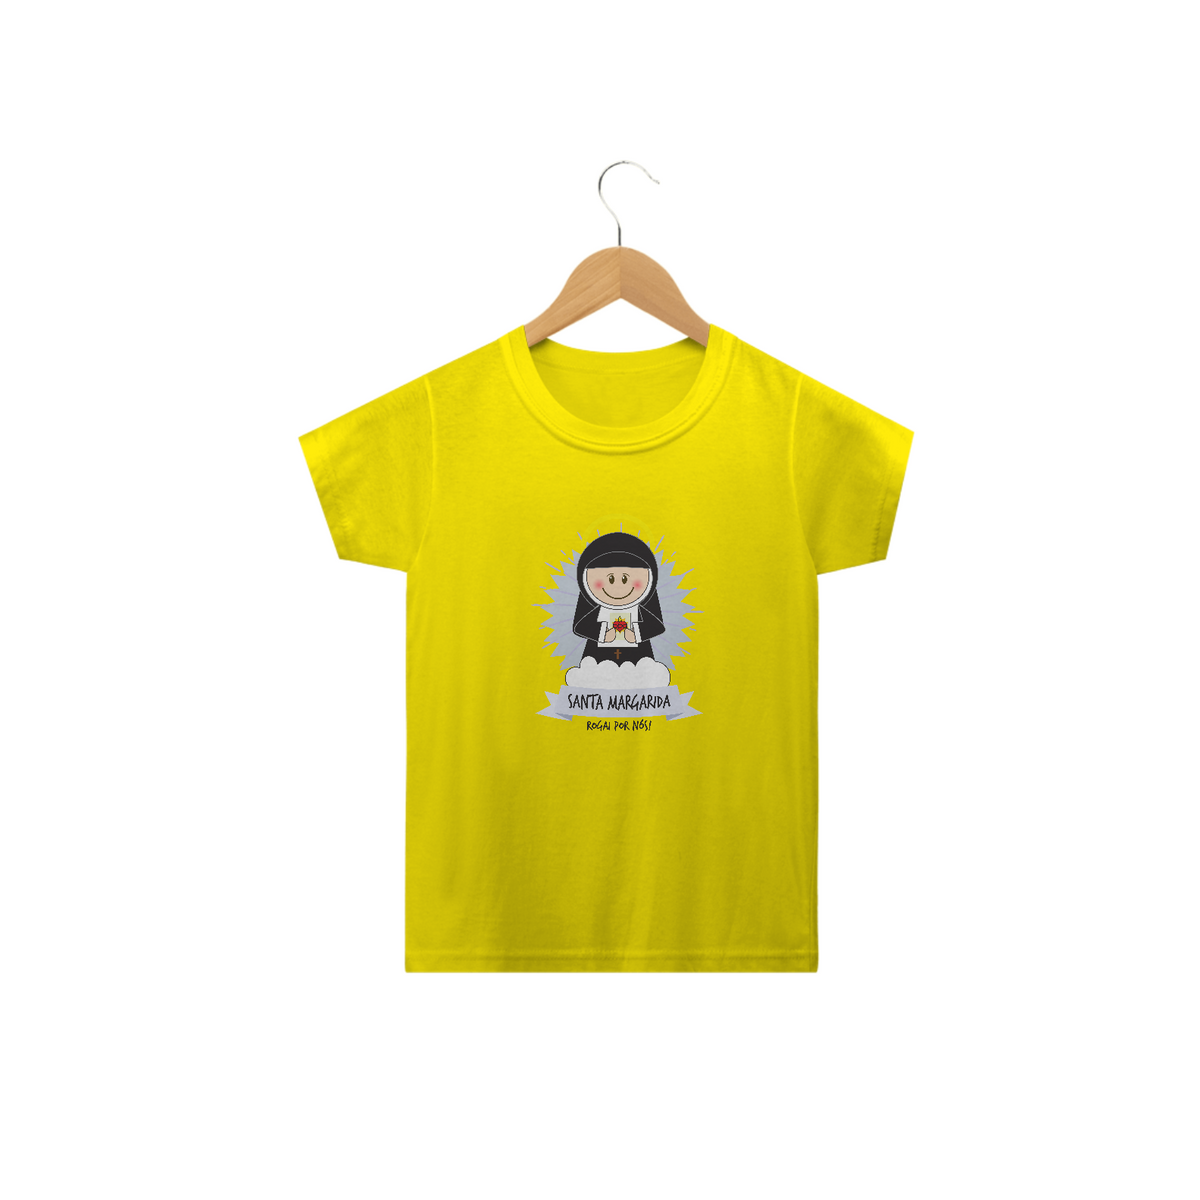 Nome do produto: Camiseta Infantil Coleção Santinhos Santa Margarida